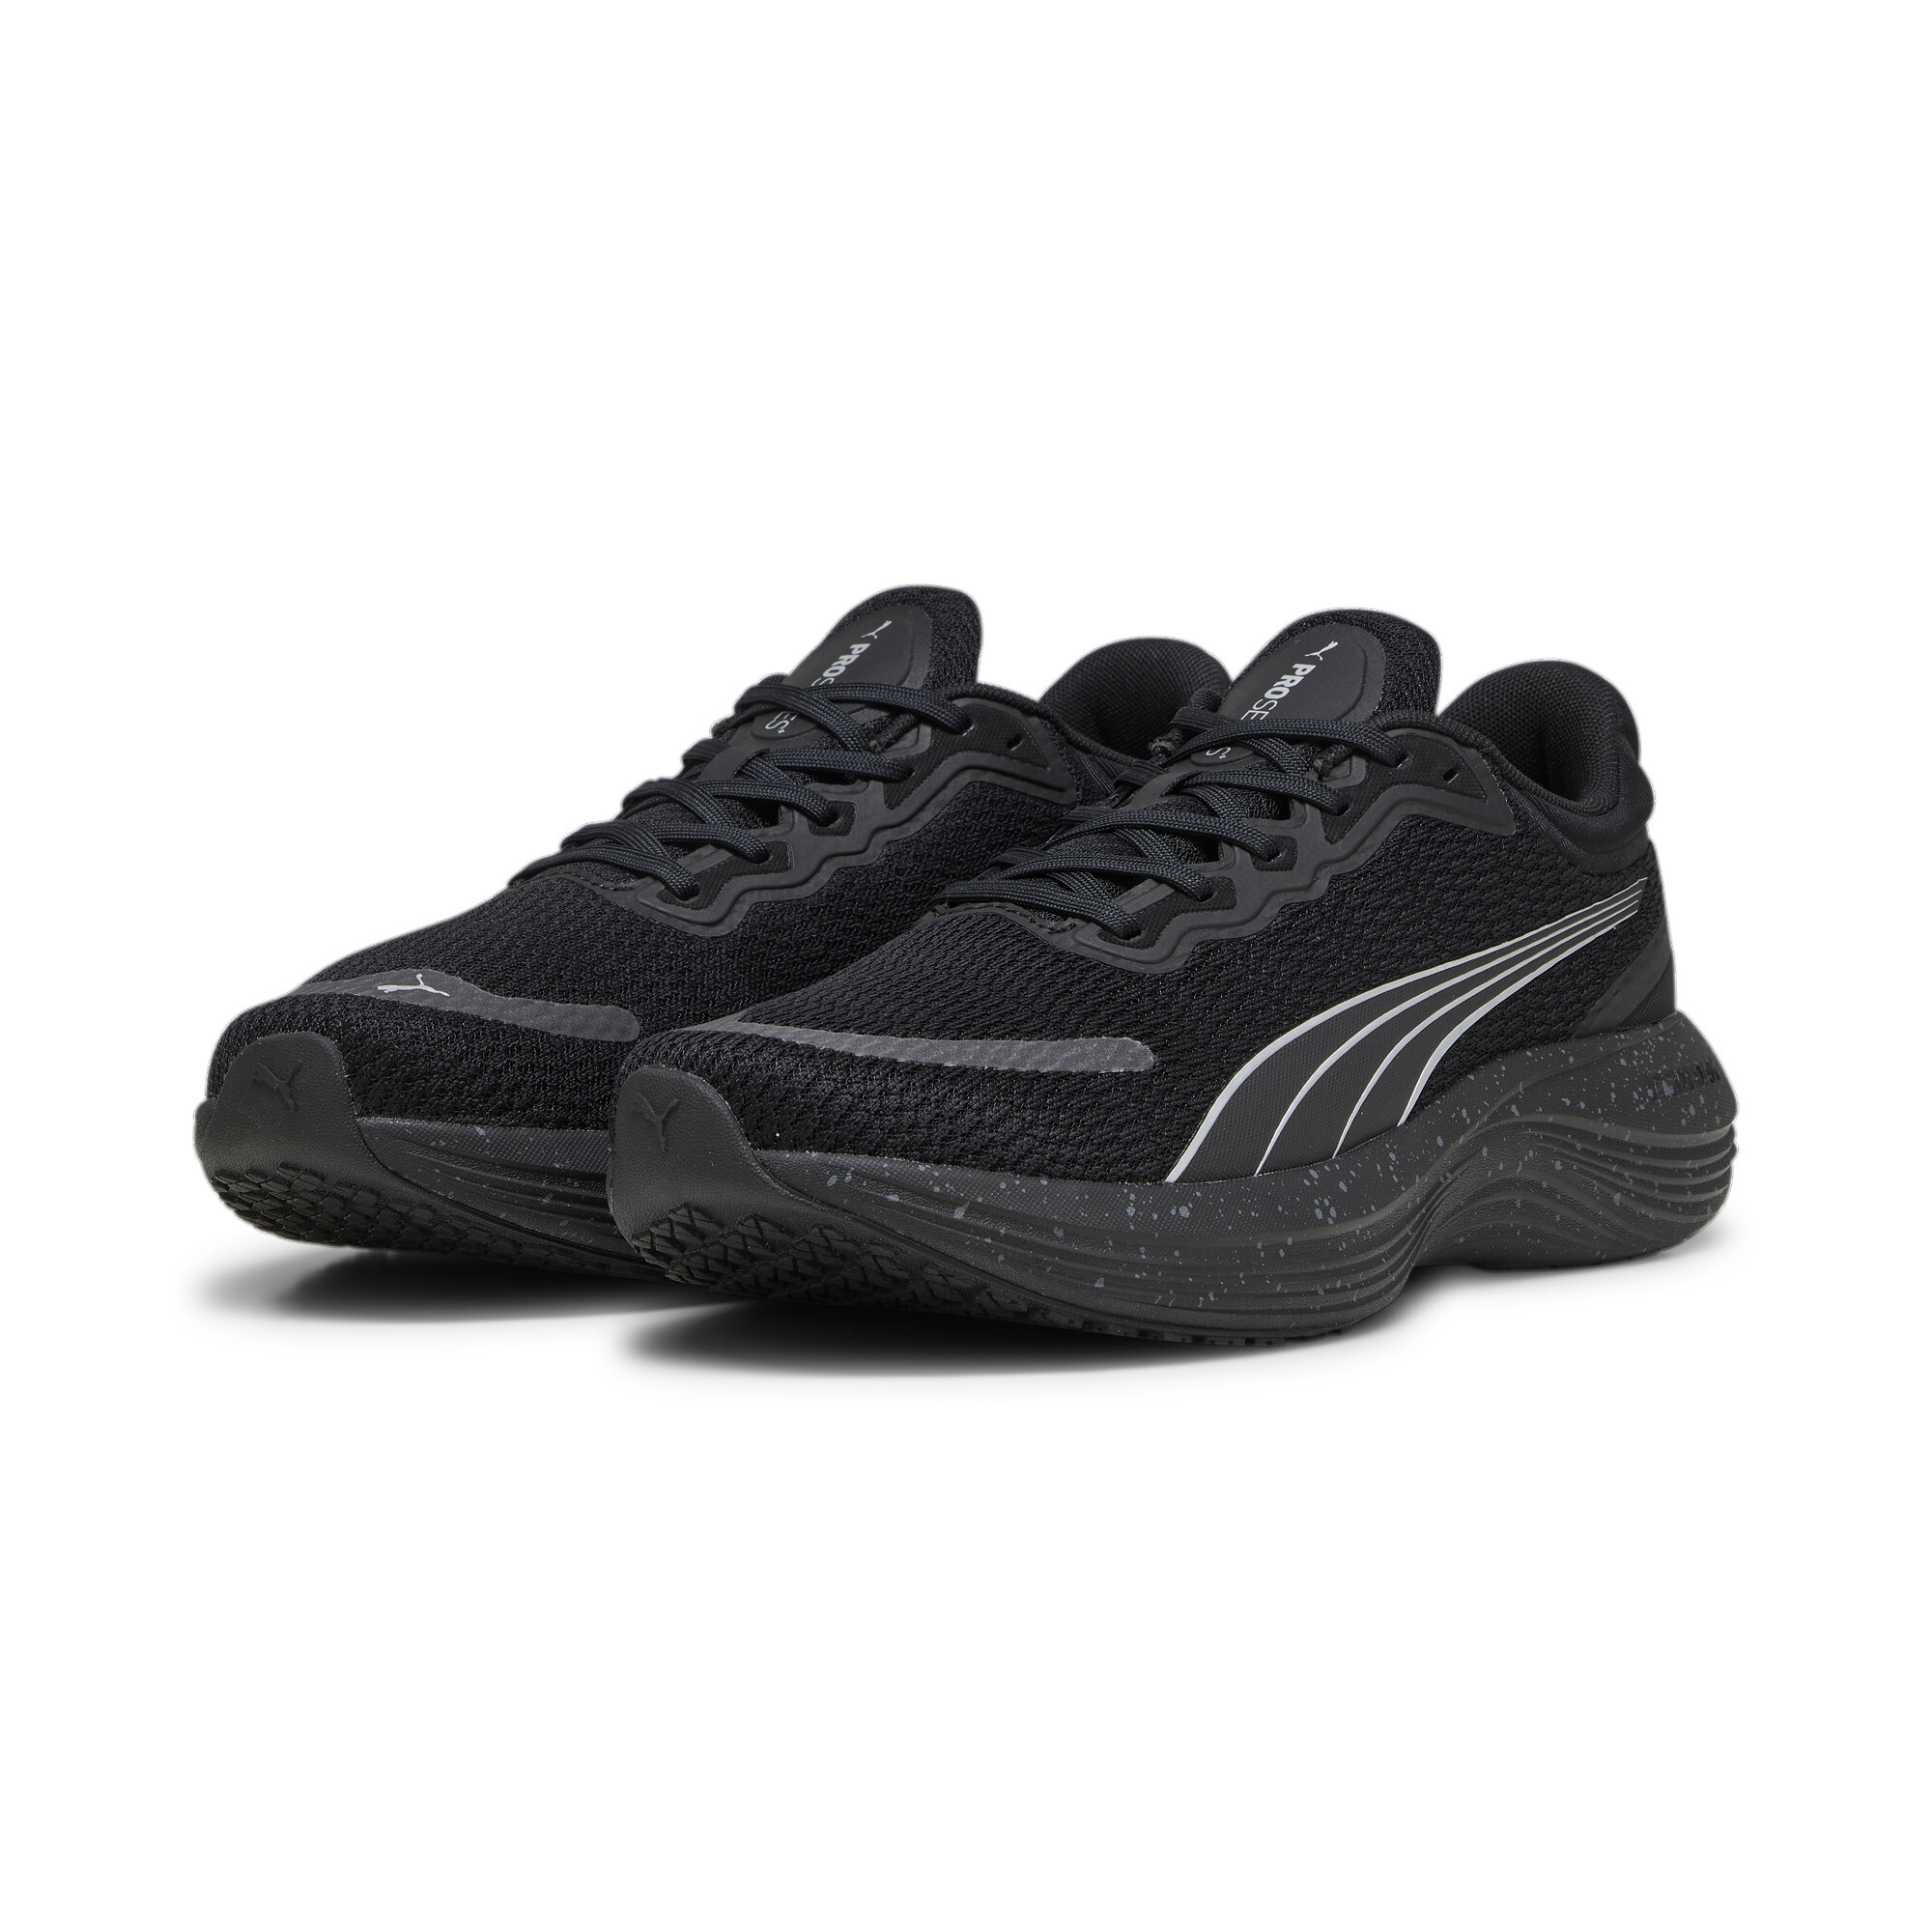 Men's PUMA Scend Pro Running Shoes In Black, Size EU 38.5